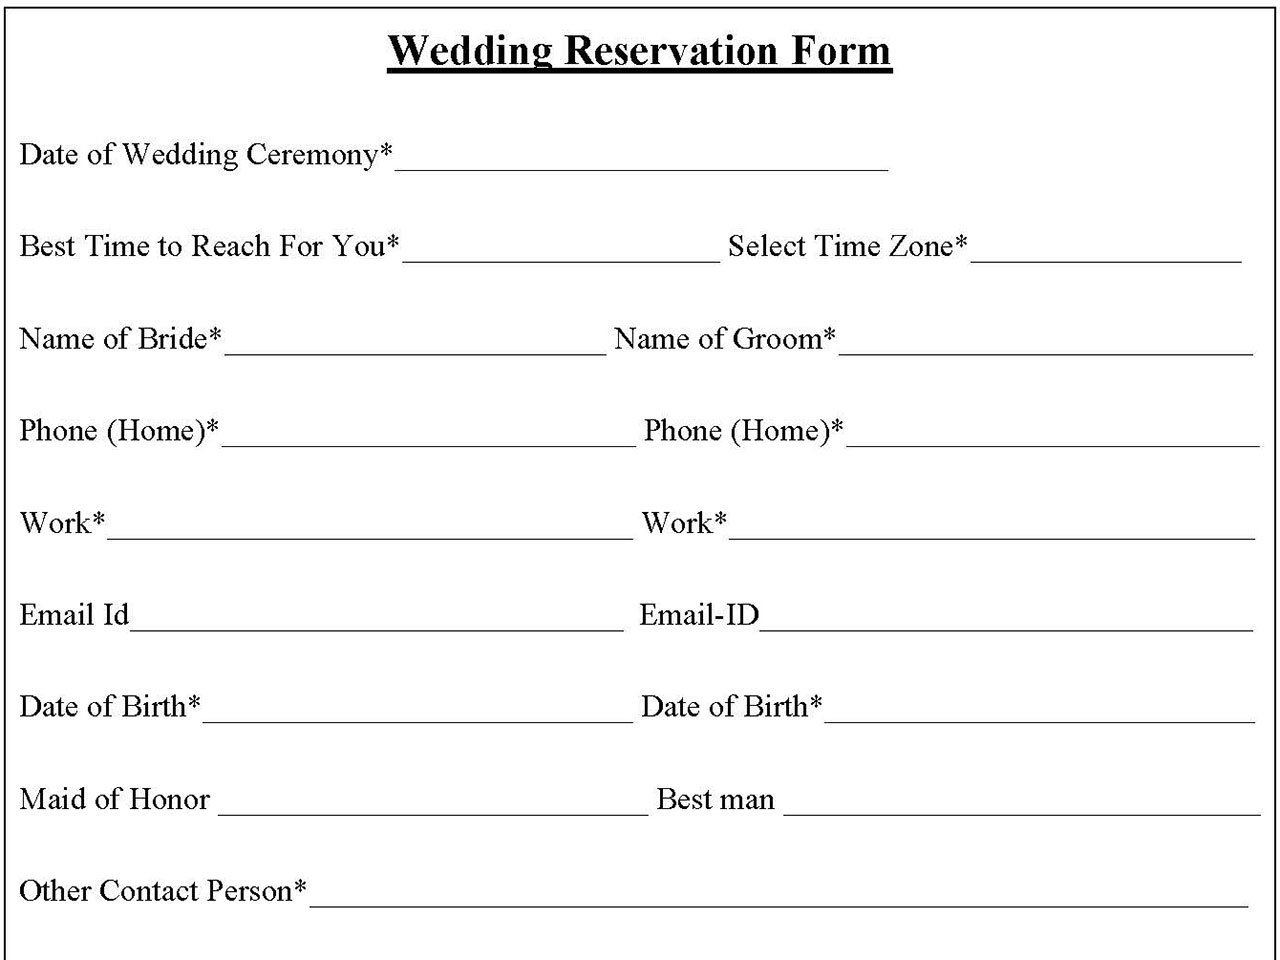 Wedding Reservation Form